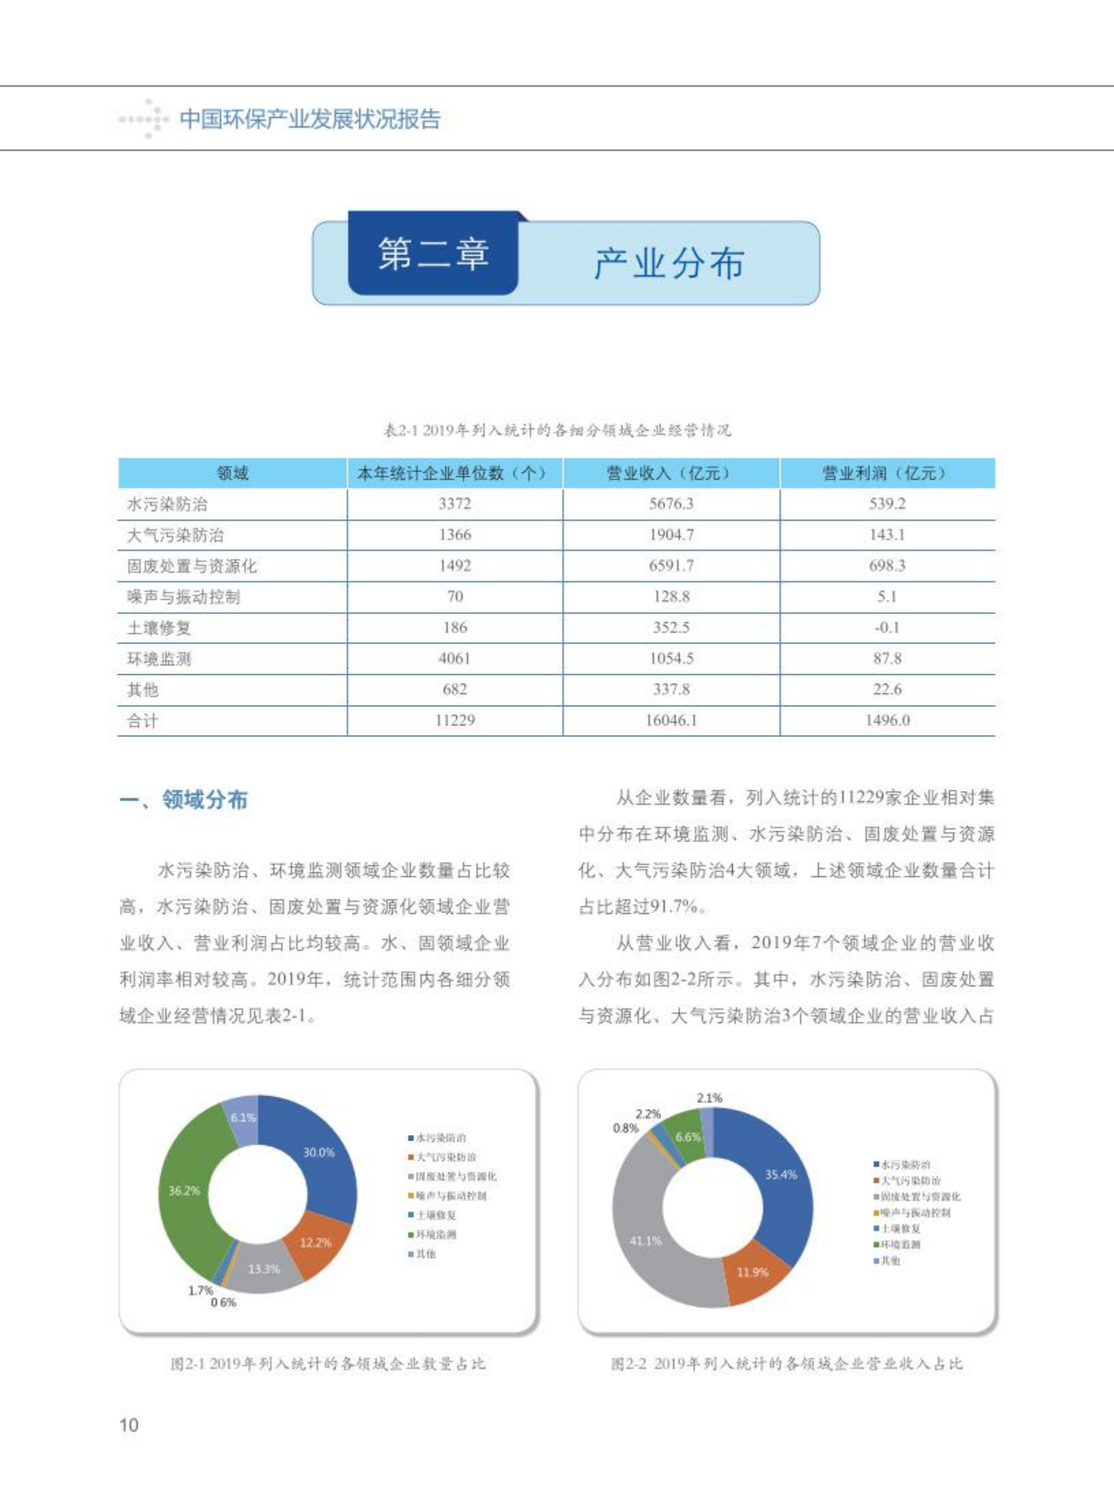 【2020】中国环保产业发展状况报告_11.png